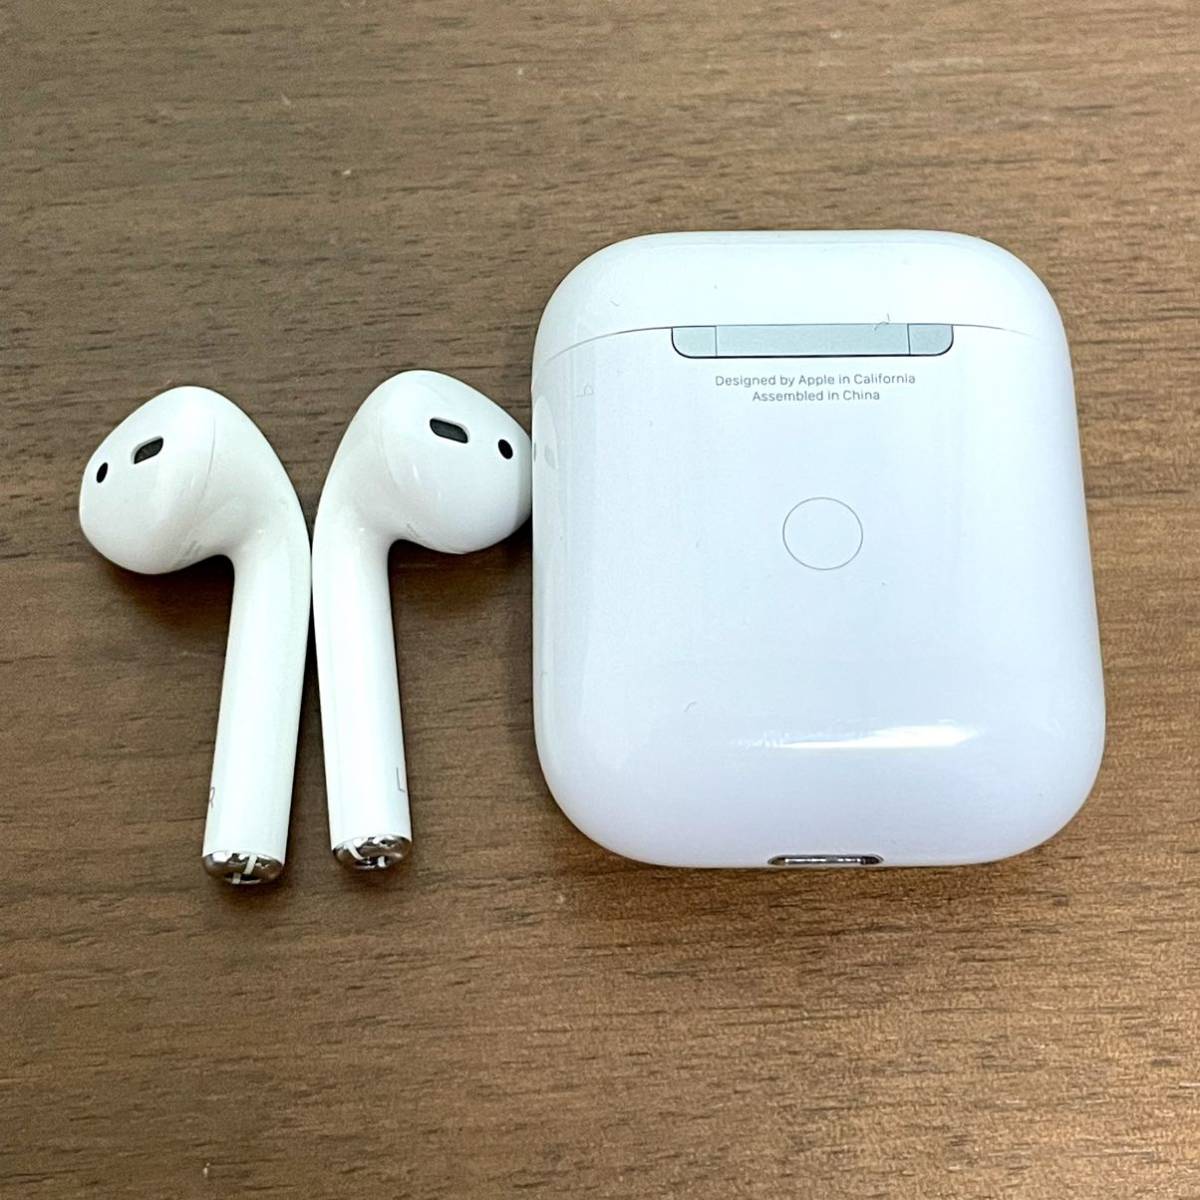 1 иен ~ AirPods no. 2 поколение A2031 A2032 превосходный товар 3 пункт товар работоспособность не проверялась Apple не осмотр товар Apple воздушный poz беспроводной слуховай аппарат Bluetooth